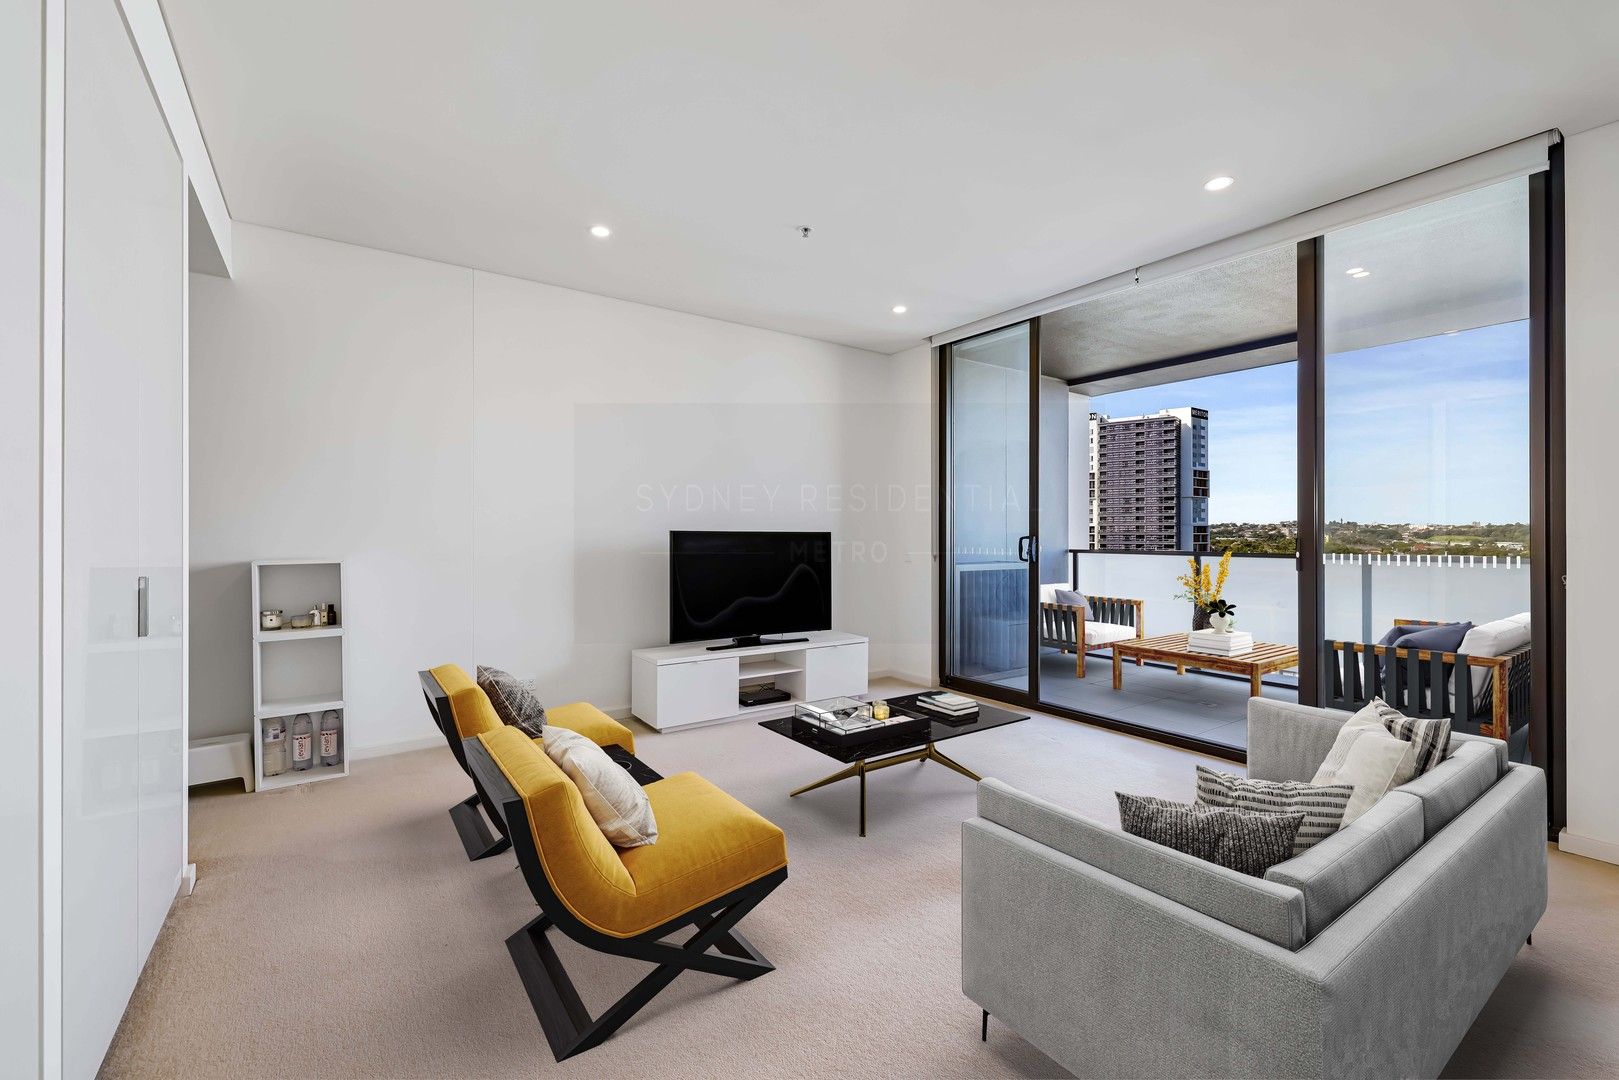 2 bedrooms Apartment / Unit / Flat in 1001/3 George Julius Avenue ZETLAND NSW, 2017